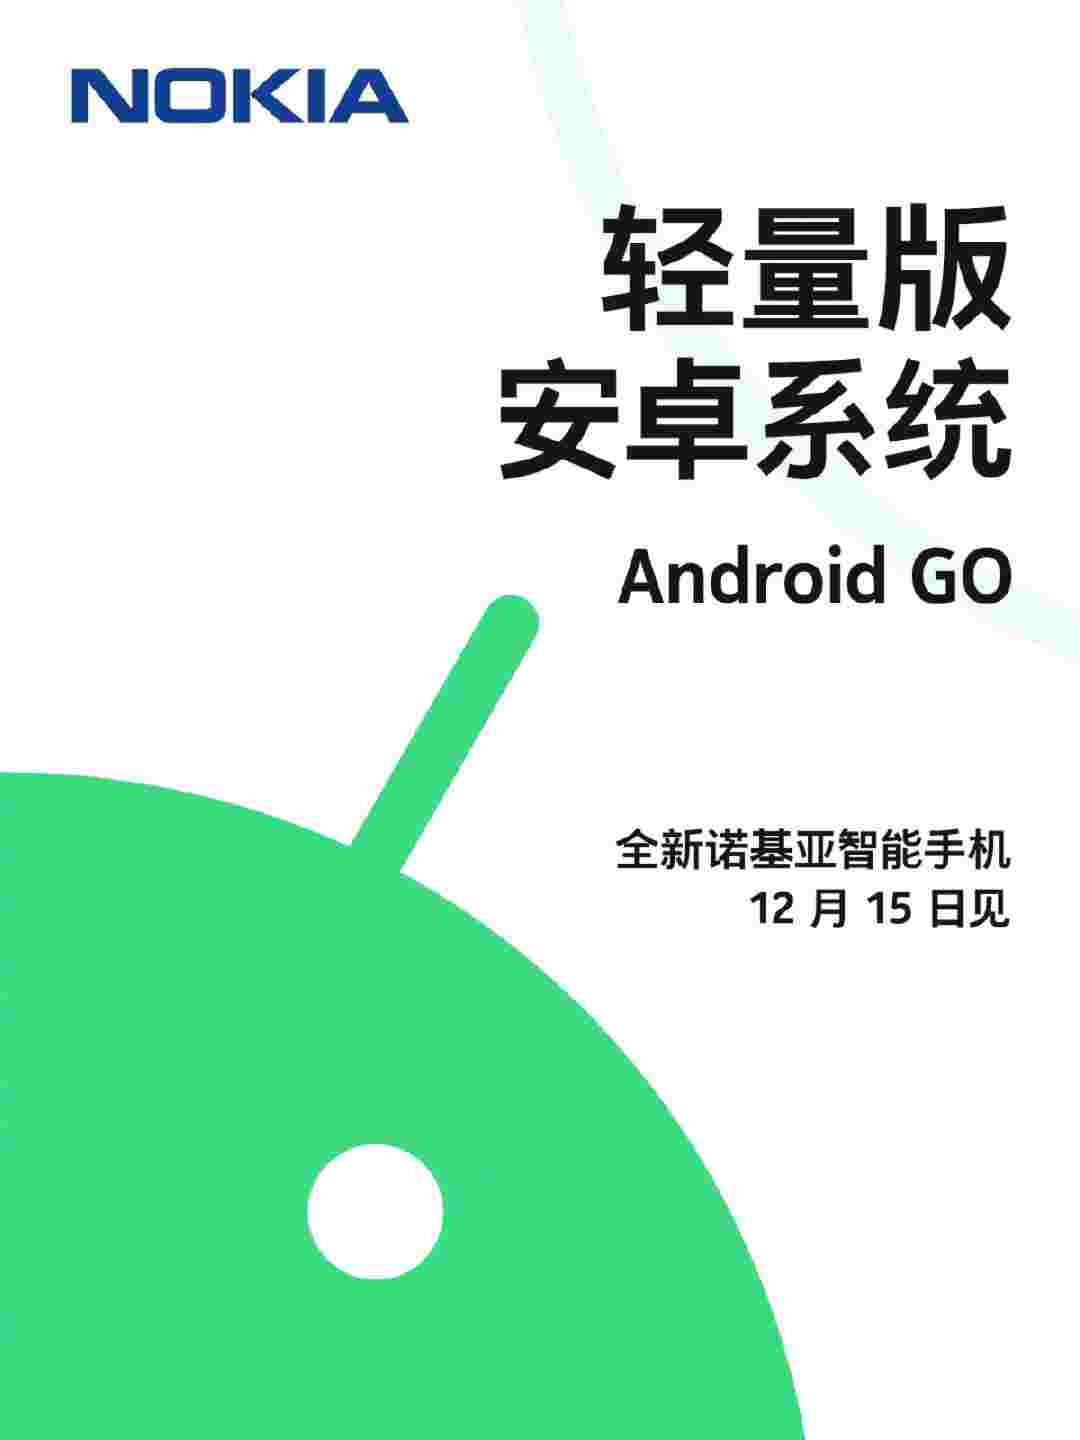 诺基亚在12月15日宣布新的Android Go Smartphone